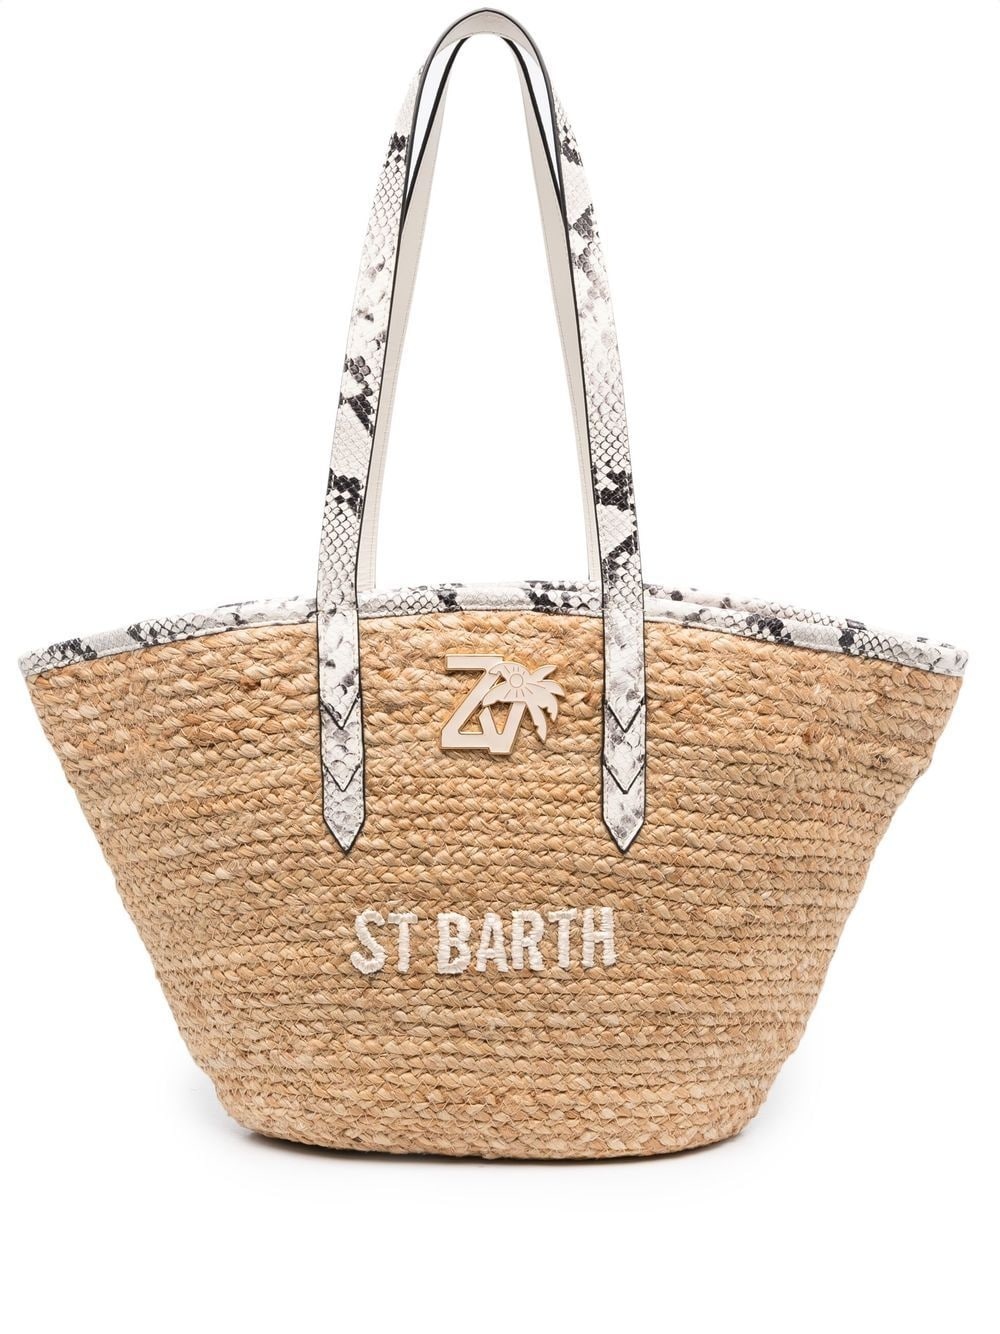 St Barth beach bag - 1